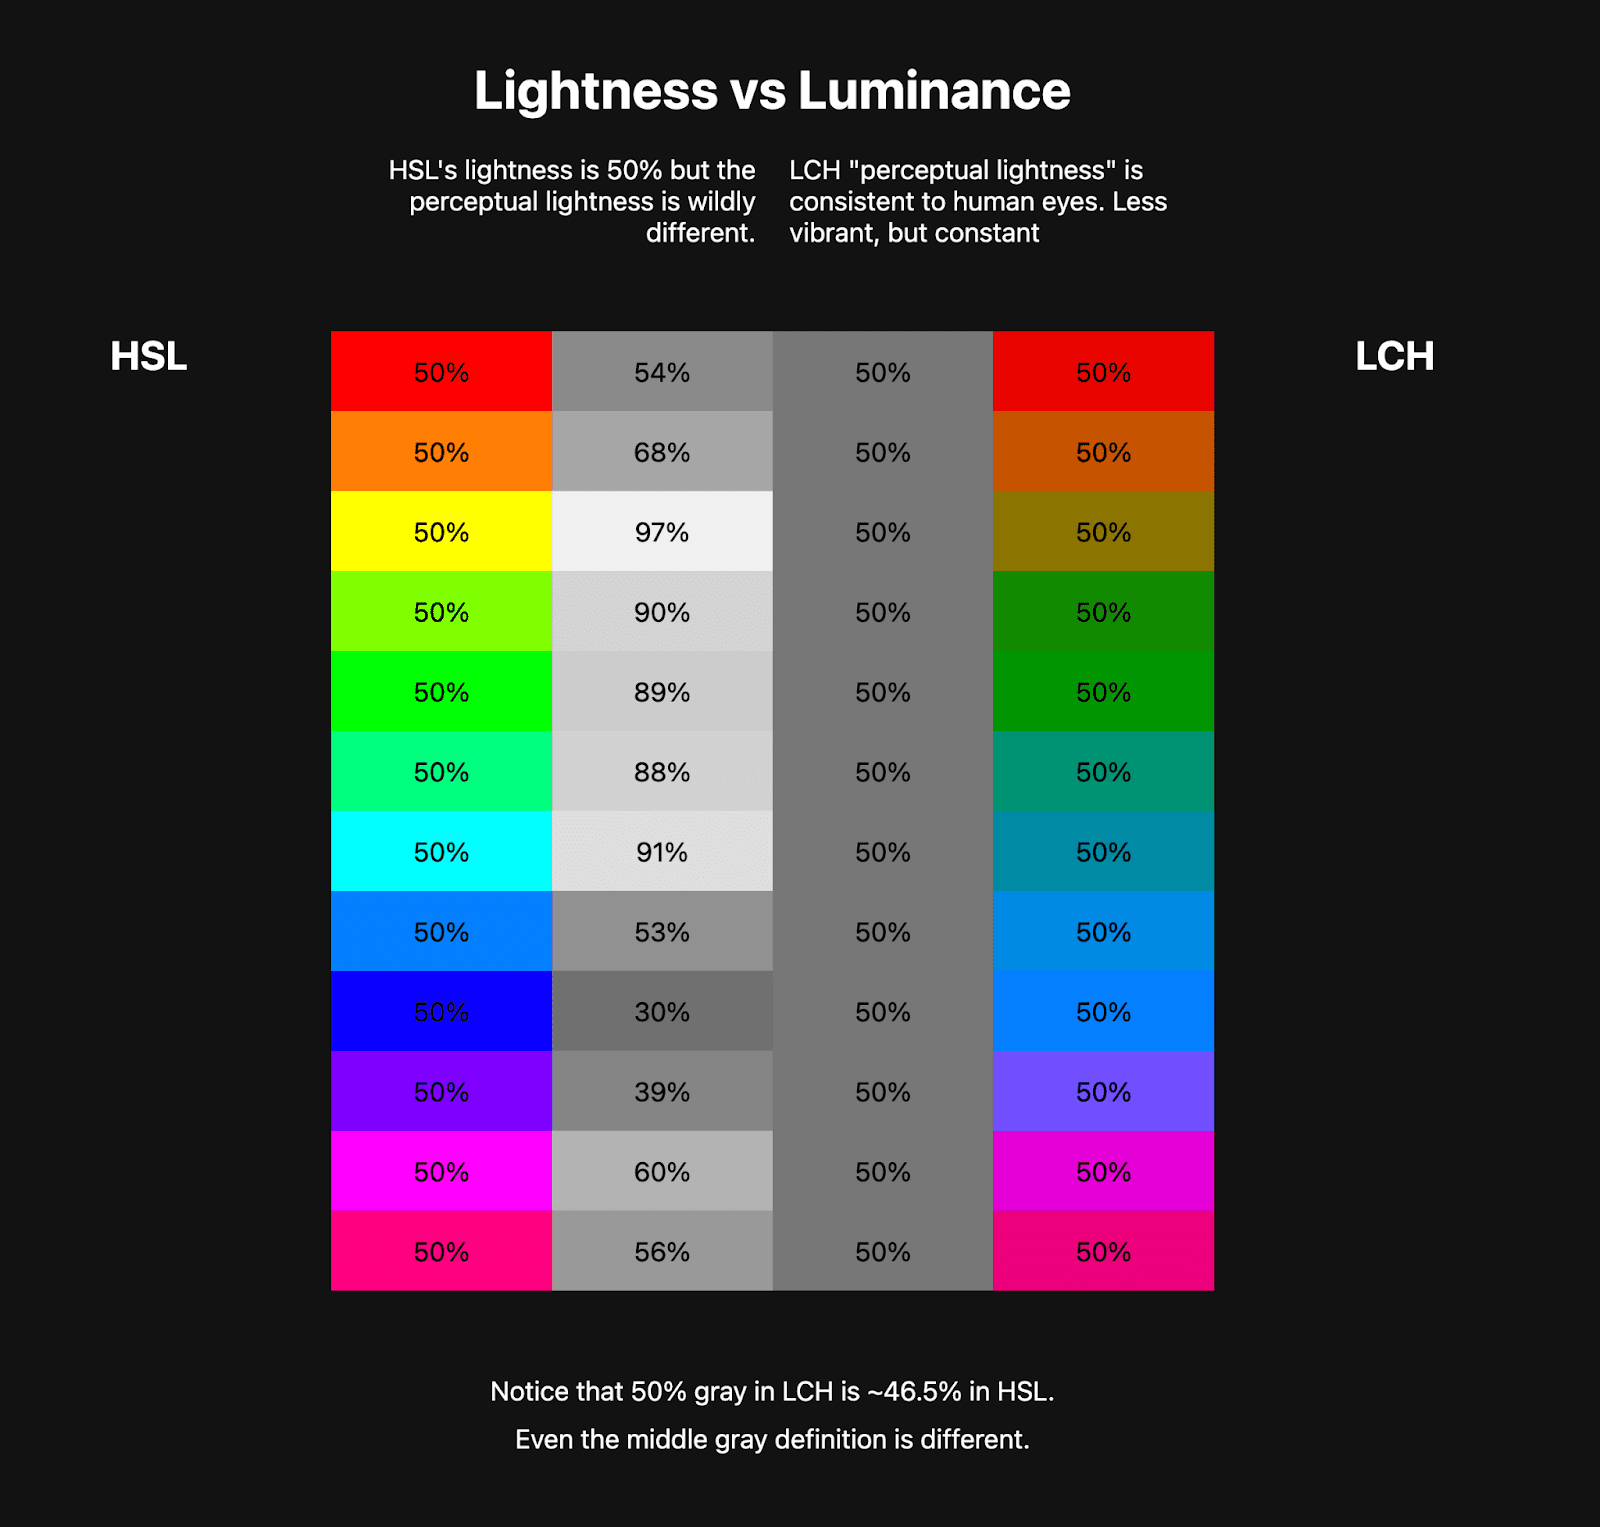 שתי טבלאות צבעוניות זו לצד זו. בטבלה הראשונה מוצגת קשת HSL של בערך 10 צבעים, ולצידה מופיעים צבעים בגווני אפור שמייצגים את הבהירות של צבעי HSL אלה. בטבלה השנייה מוצגת קשת LCH,
    הרבה פחות תוססת, אבל הצבעים של גווני האפור עקביים.
    כך ניתן לראות איך ל-LCH יש ערך בהירות יציב קבוע ואילו ל-HSL אין.